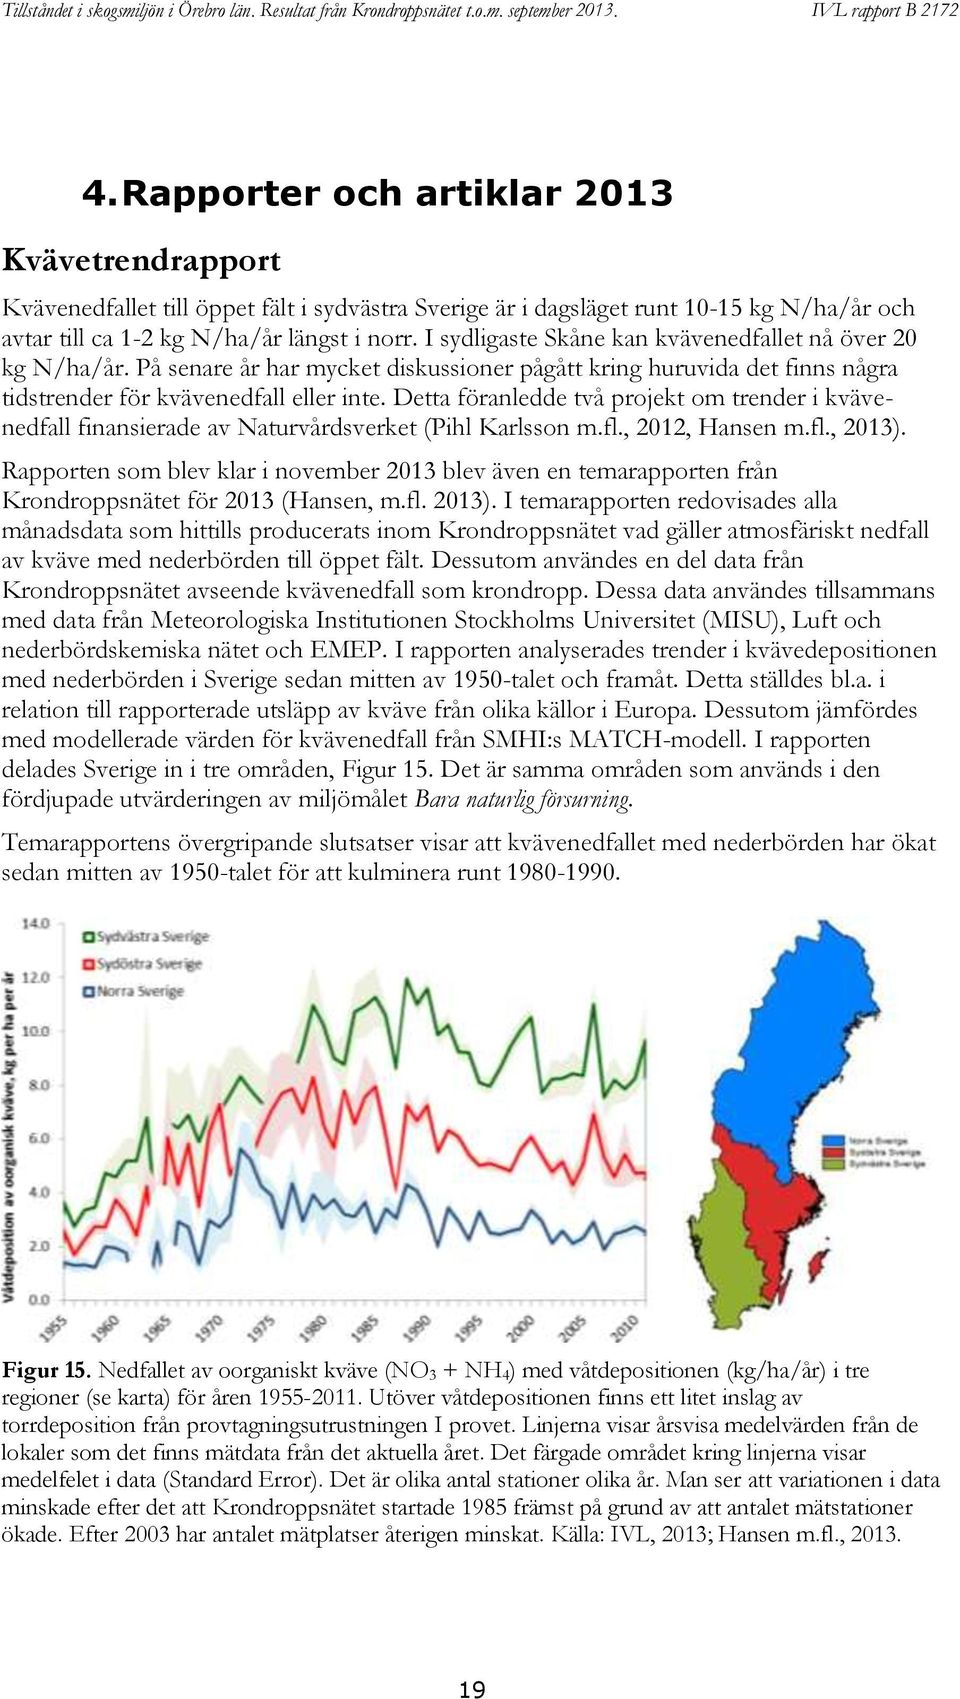 Detta föranledde två projekt om trender i kvävenedfall finansierade av Naturvårdsverket (Pihl Karlsson m.fl., 2012, Hansen m.fl., 2013).